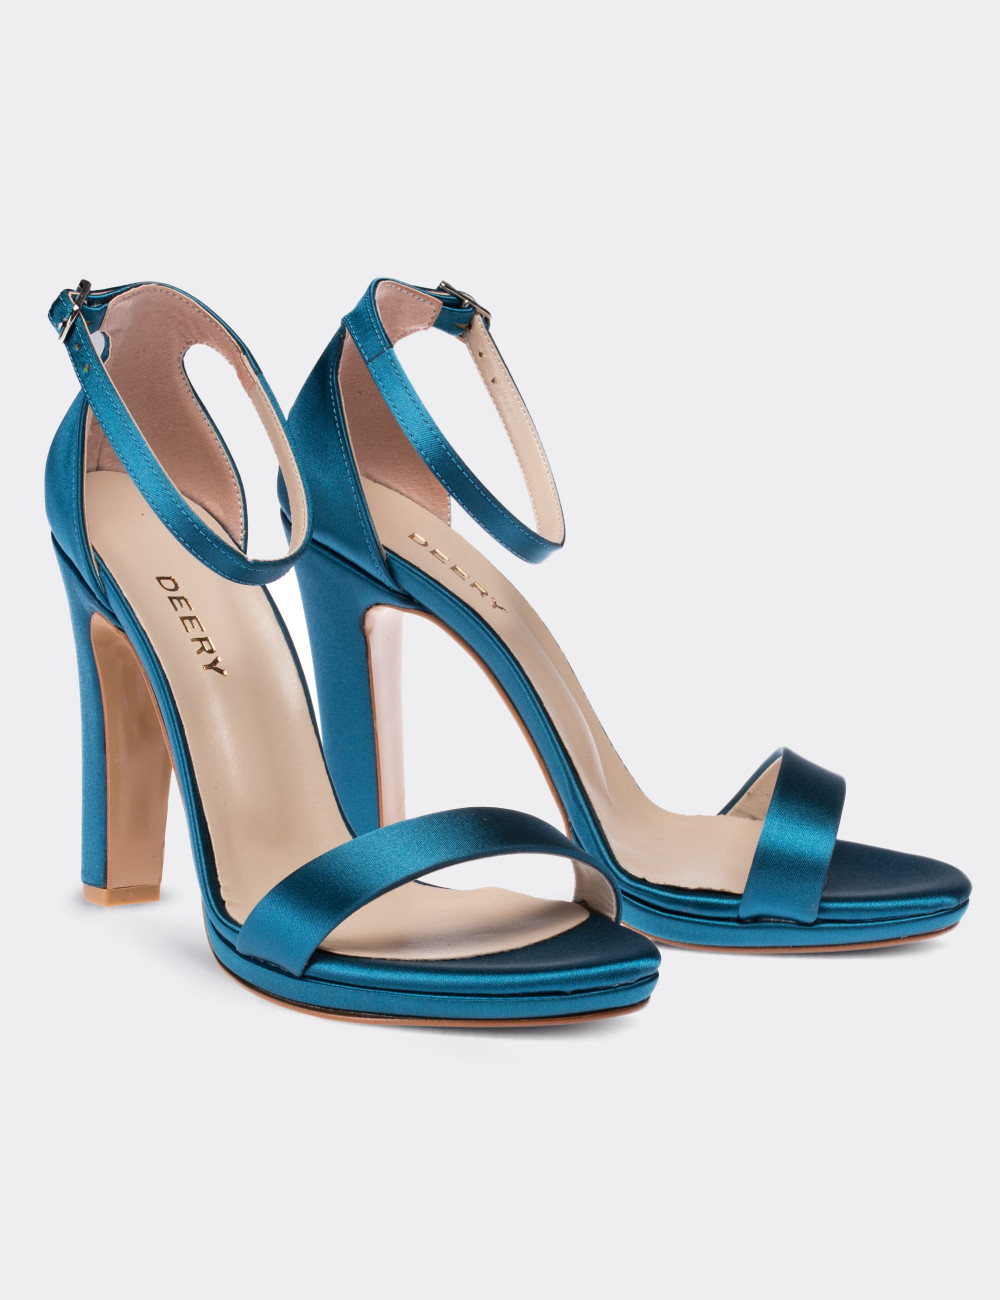 Mavi Saten Abiye Topuklu Kadın Ayakkabı - C0855ZMVIM01